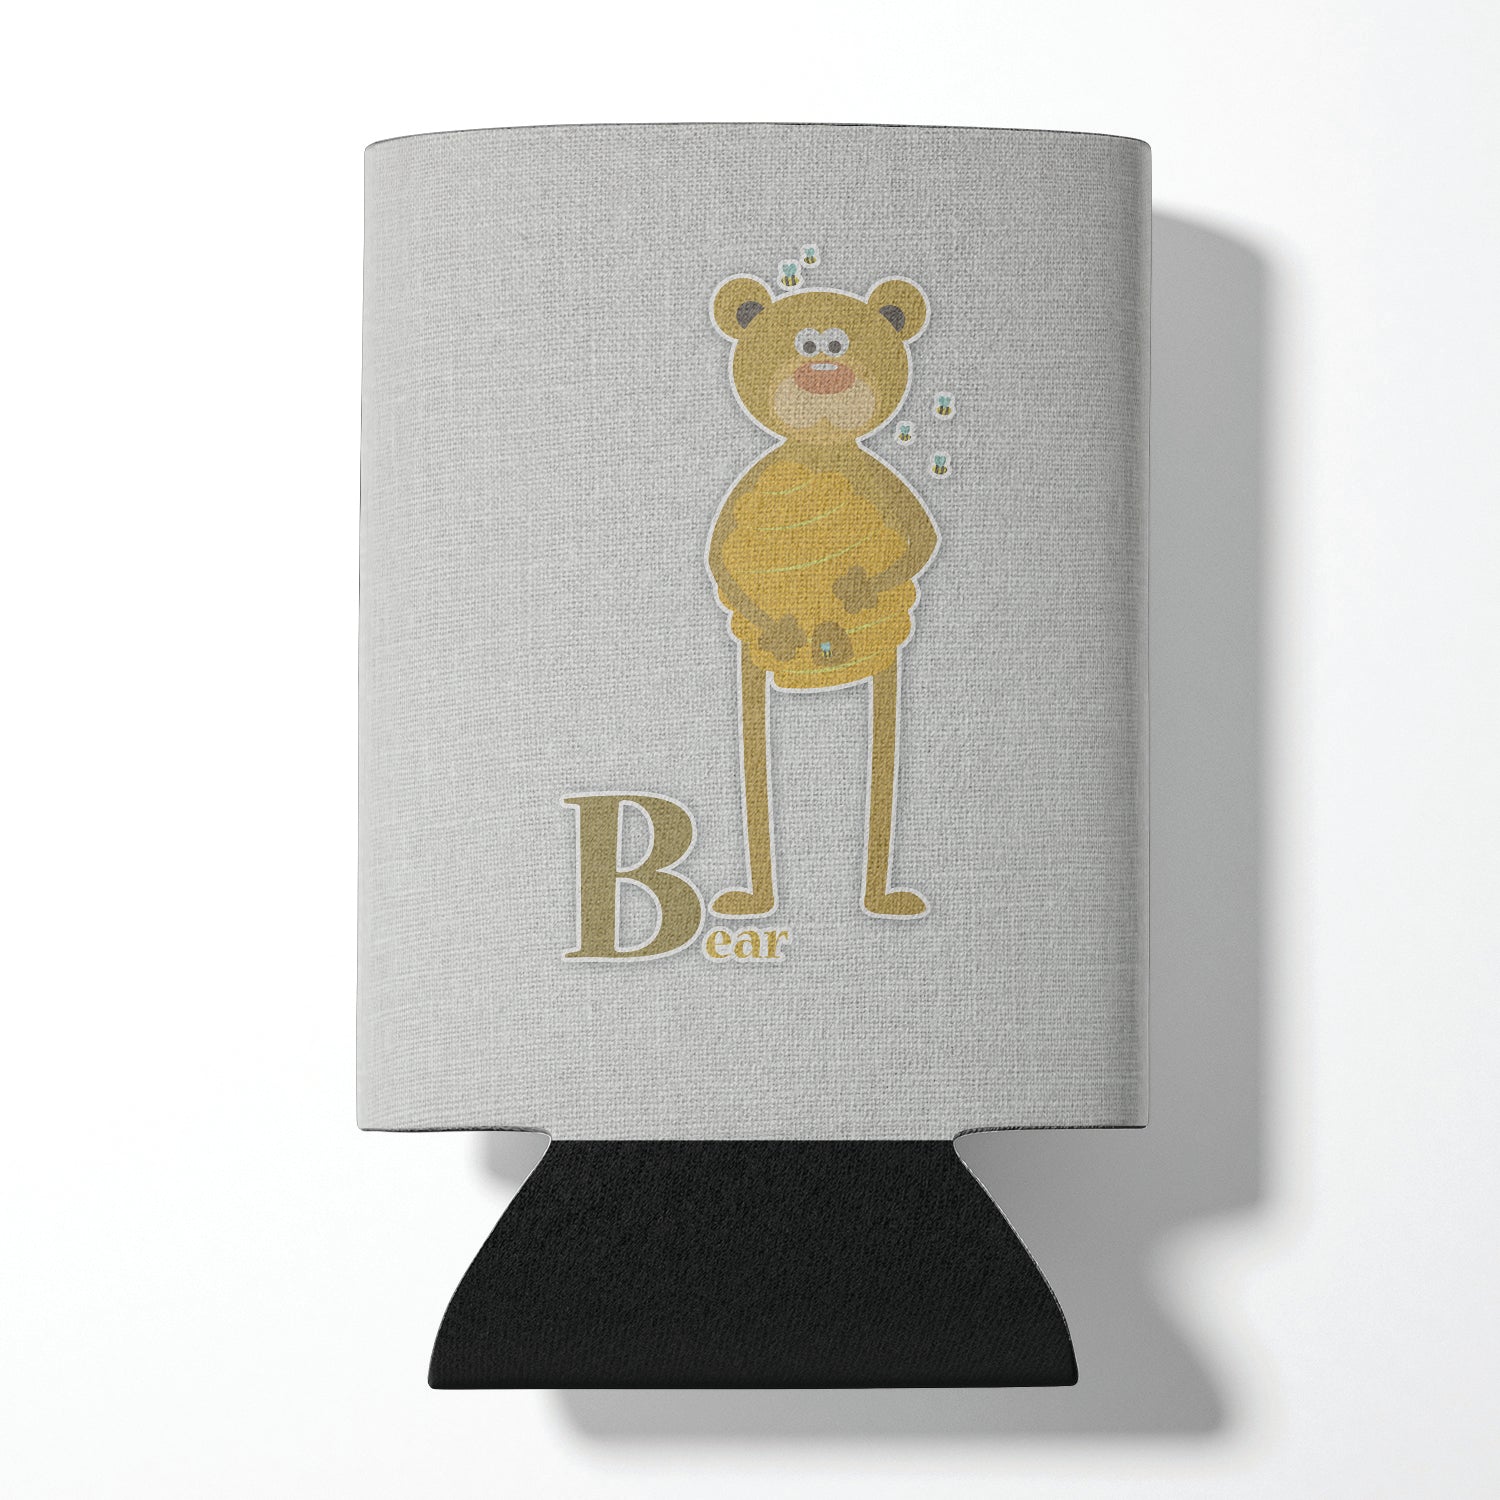 Alphabet B for Bear Can or Bottle Hugger BB5727CC